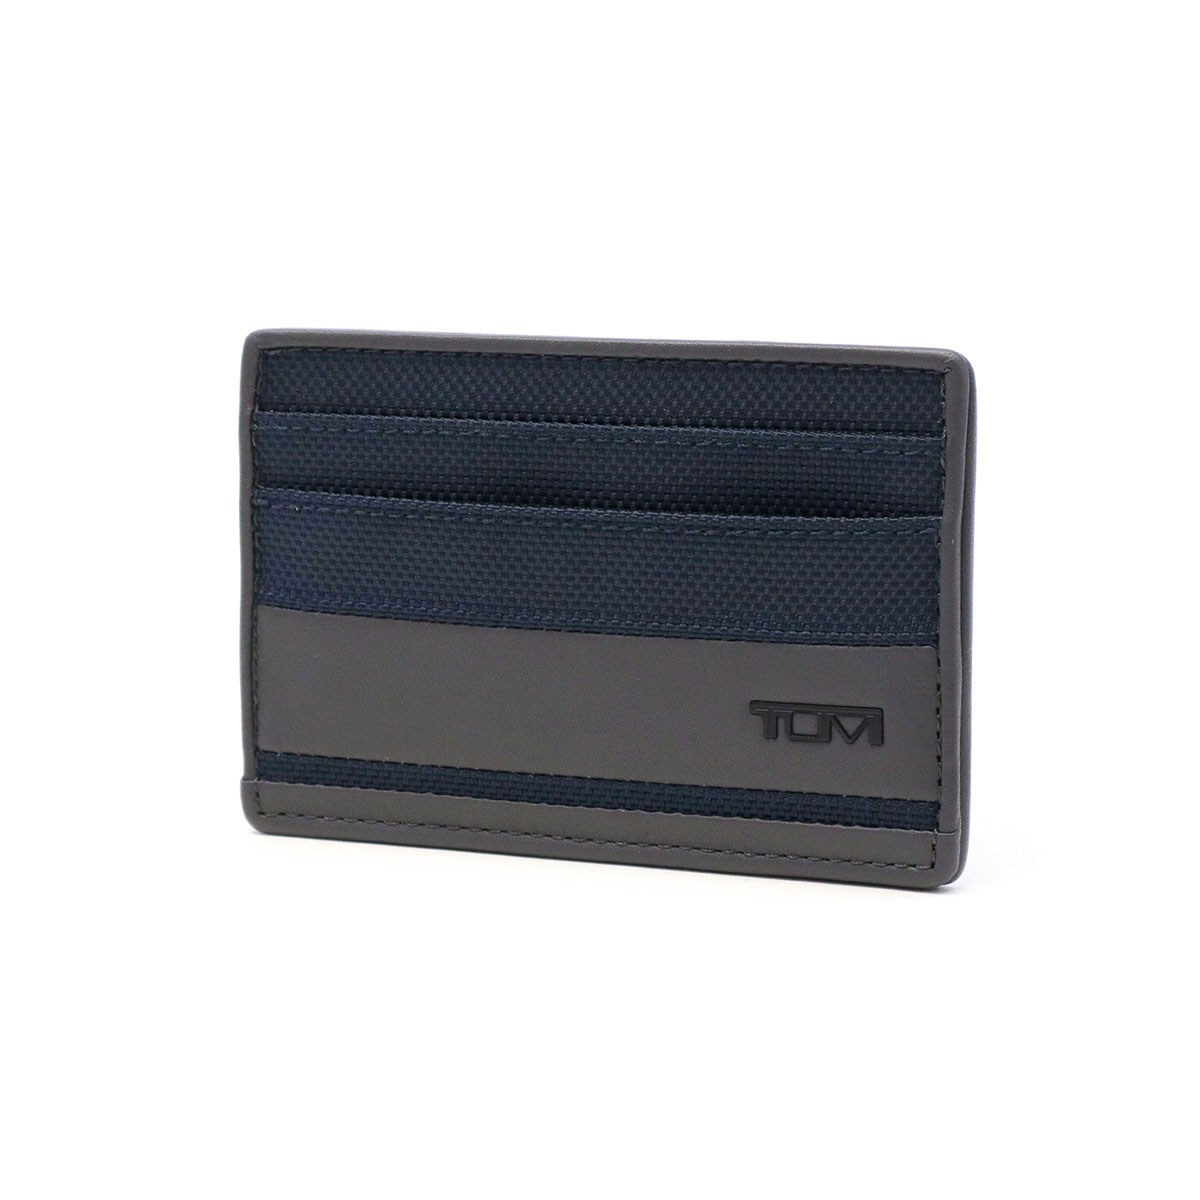 最大41%★6/9限定 正規品2年保証 トゥミ カードケース TUMI ALPHA SLG Slim Card Case スリム・カード・ケース  パスケース メンズ ビジネス 01192259